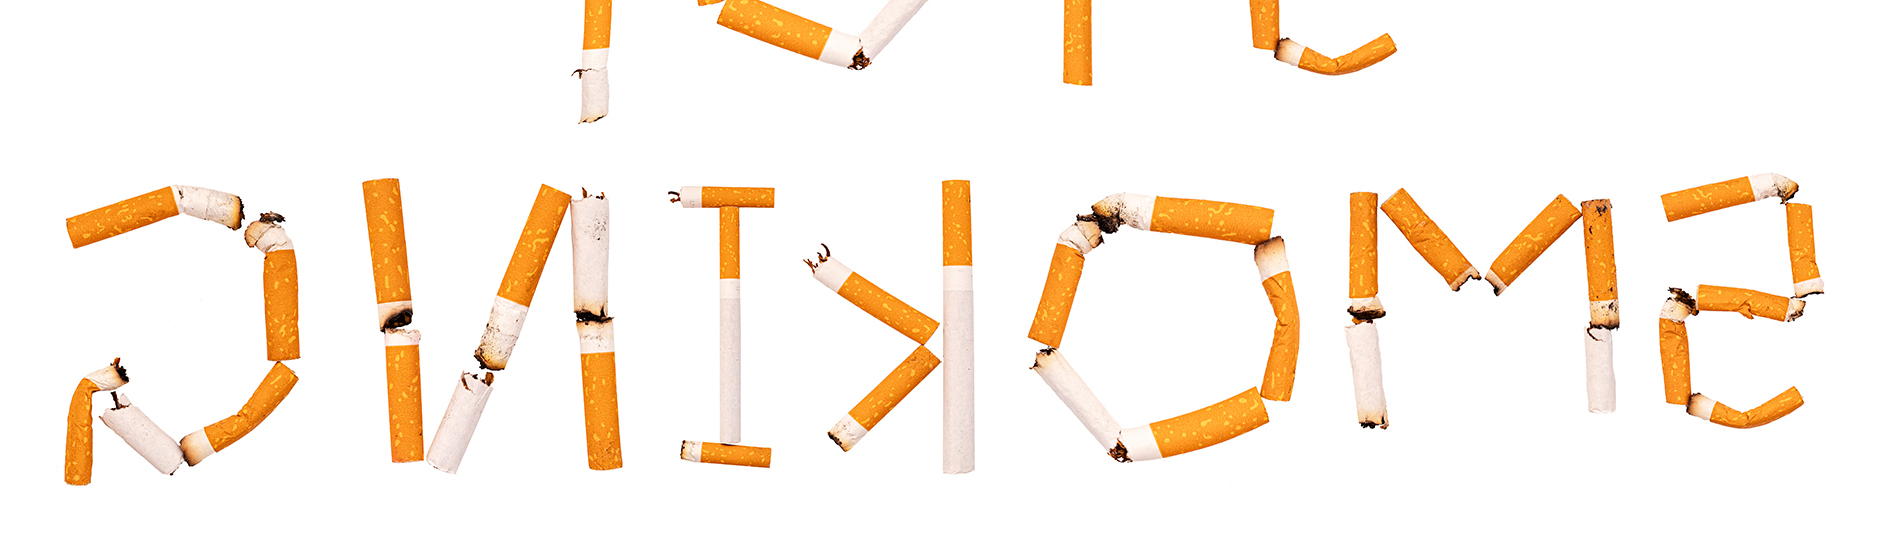 Nouveau traitement anti tabac